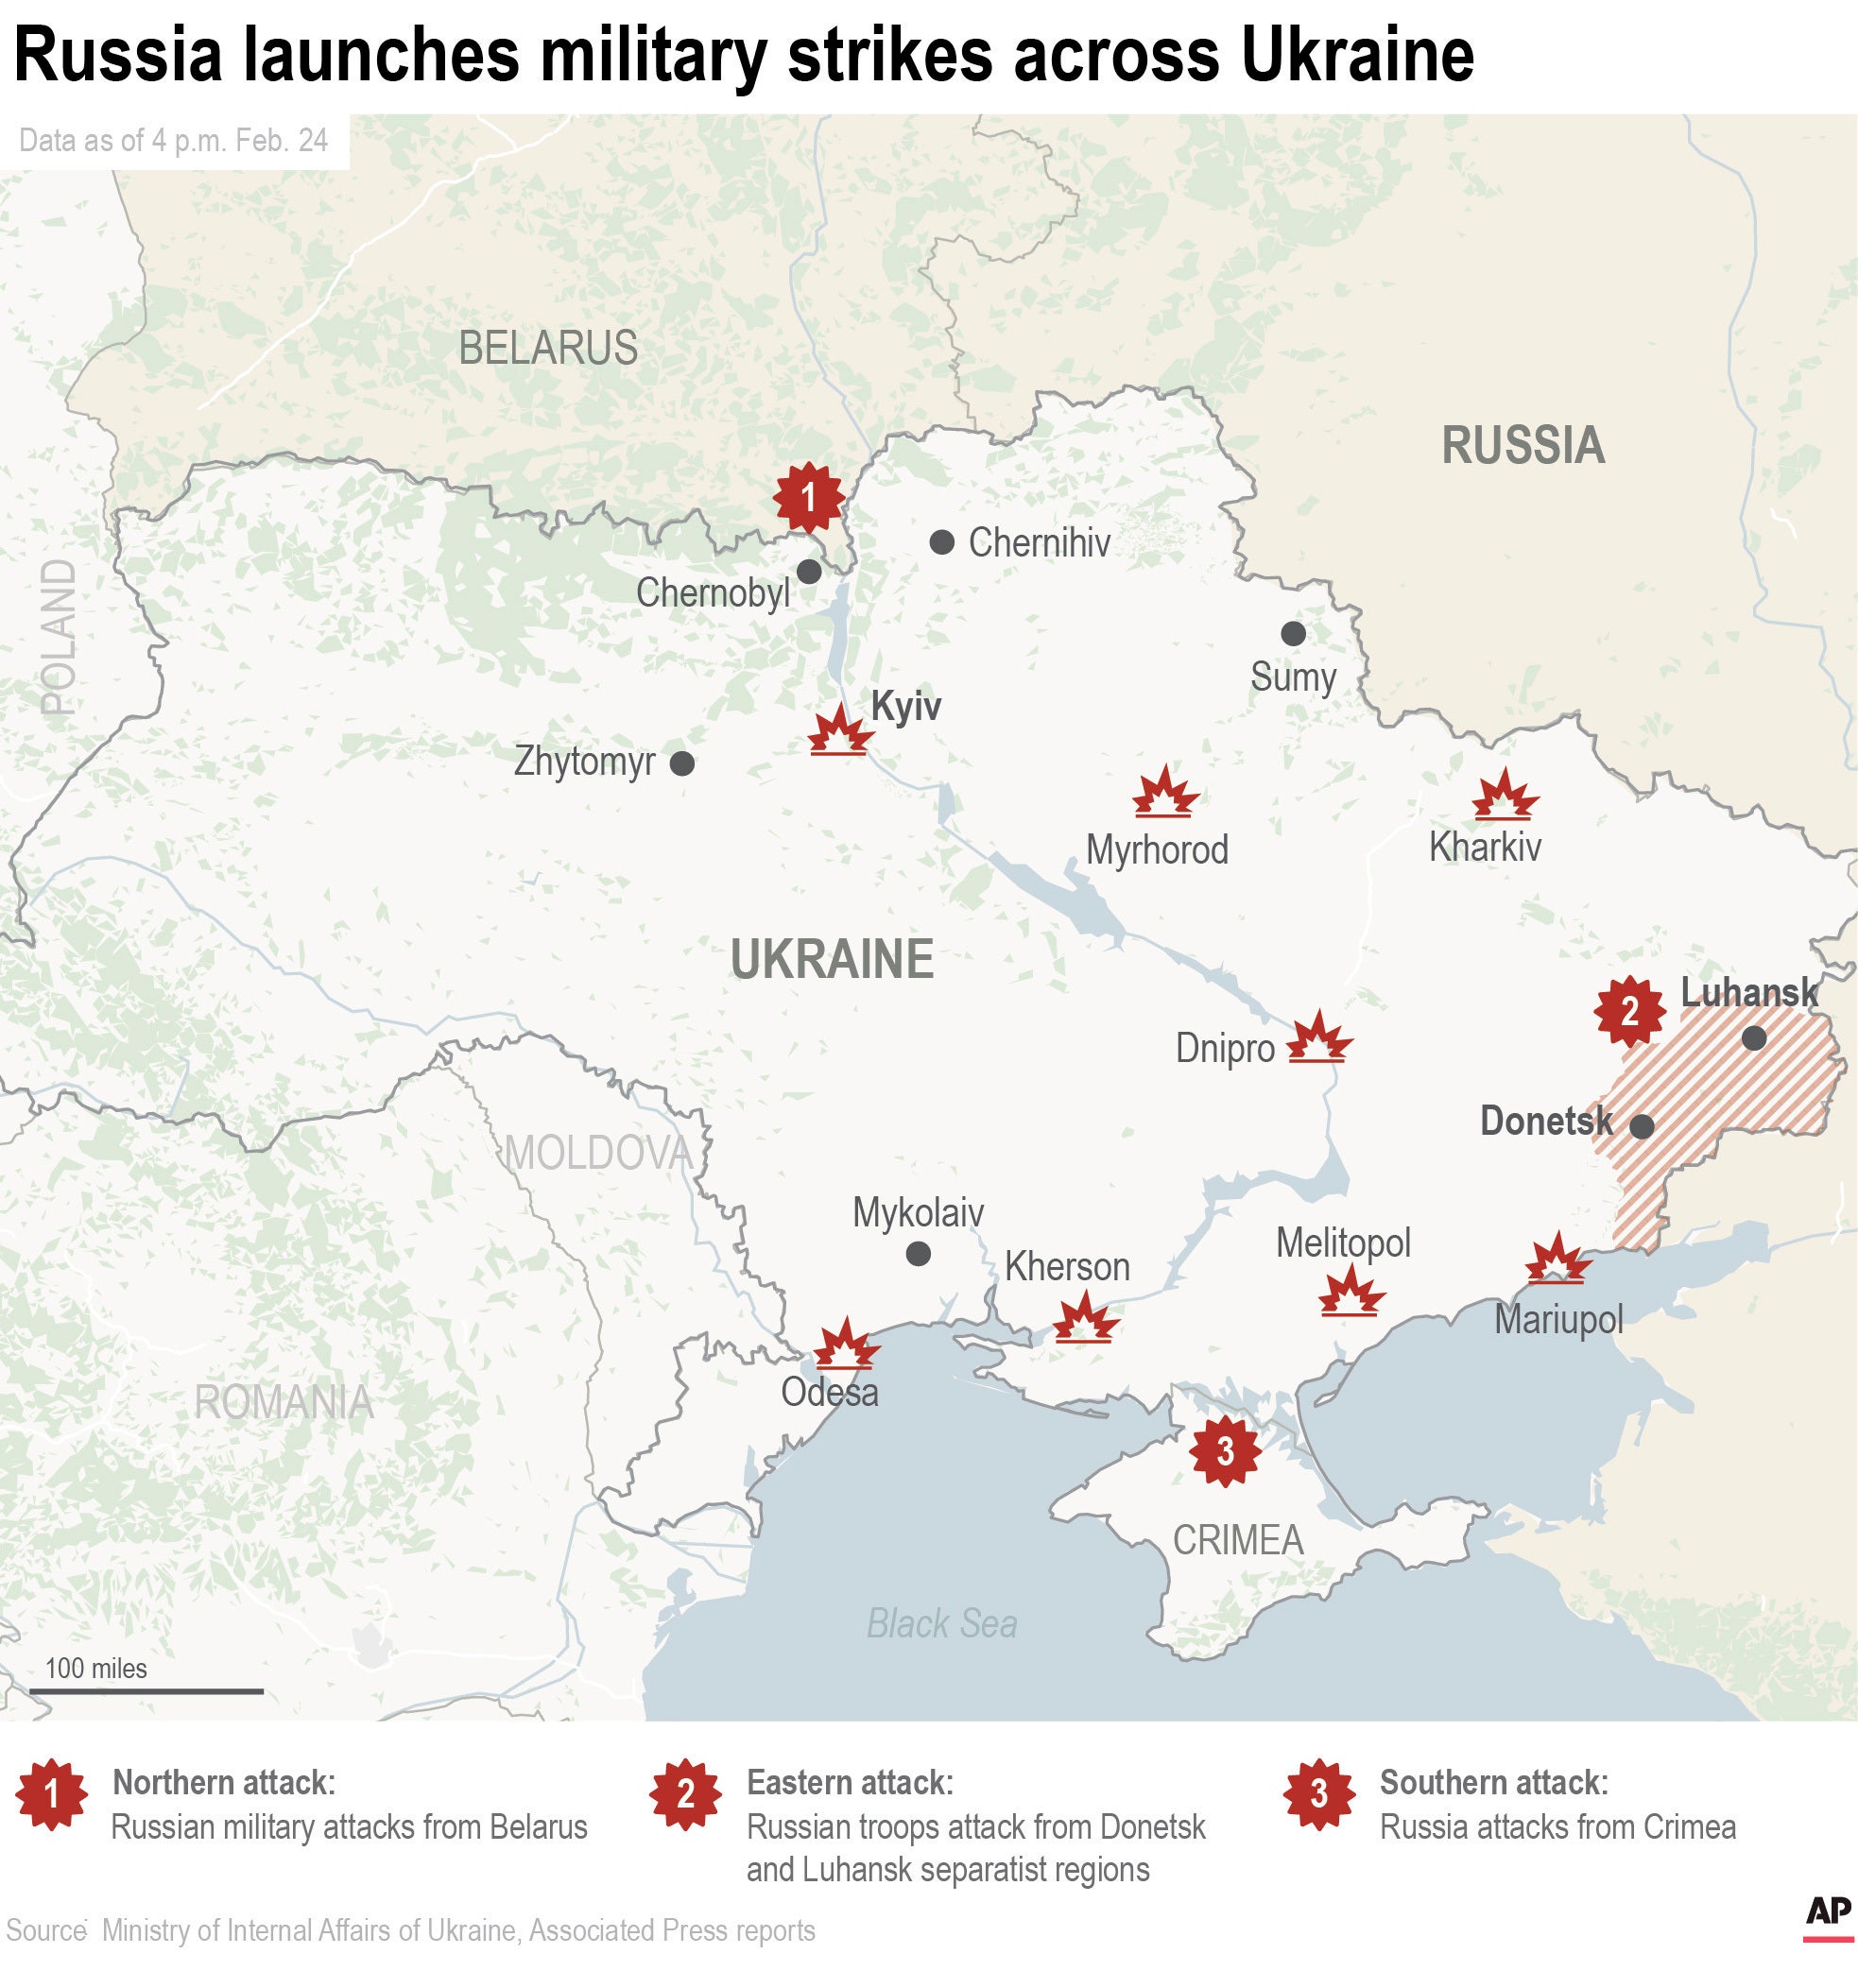 El siguiente mapa muestra las ubicaciones de los ataques militares rusos conocidos dentro de Ucrania después de que Rusia anunciara una invasión militar de Ucrania